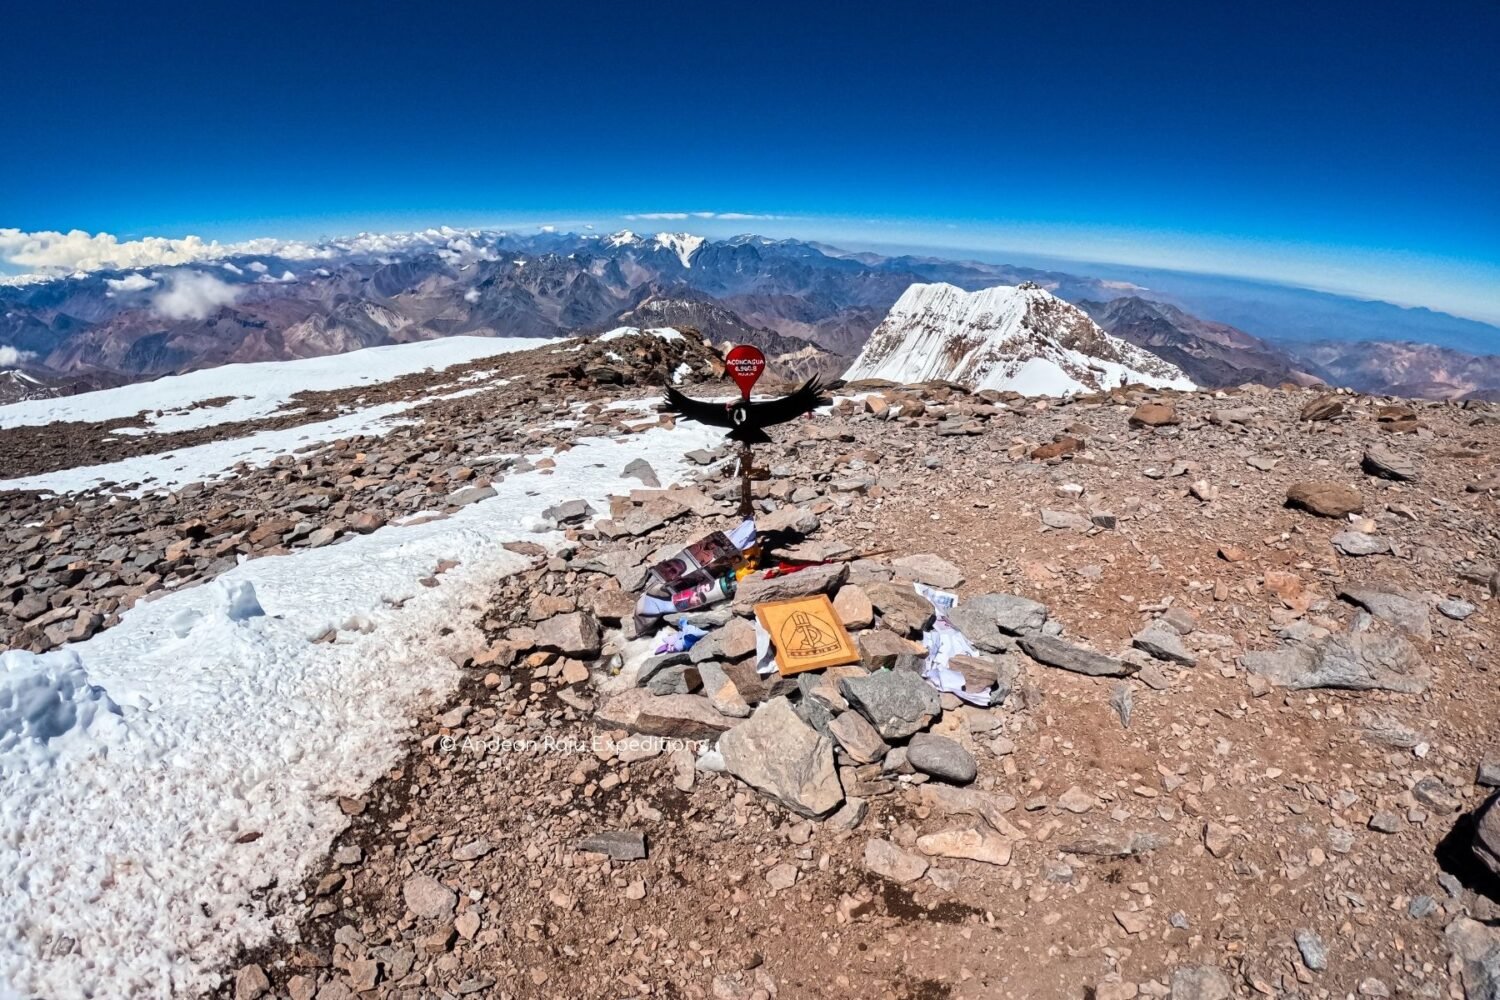 Aconcagua Summit (6,960 m)